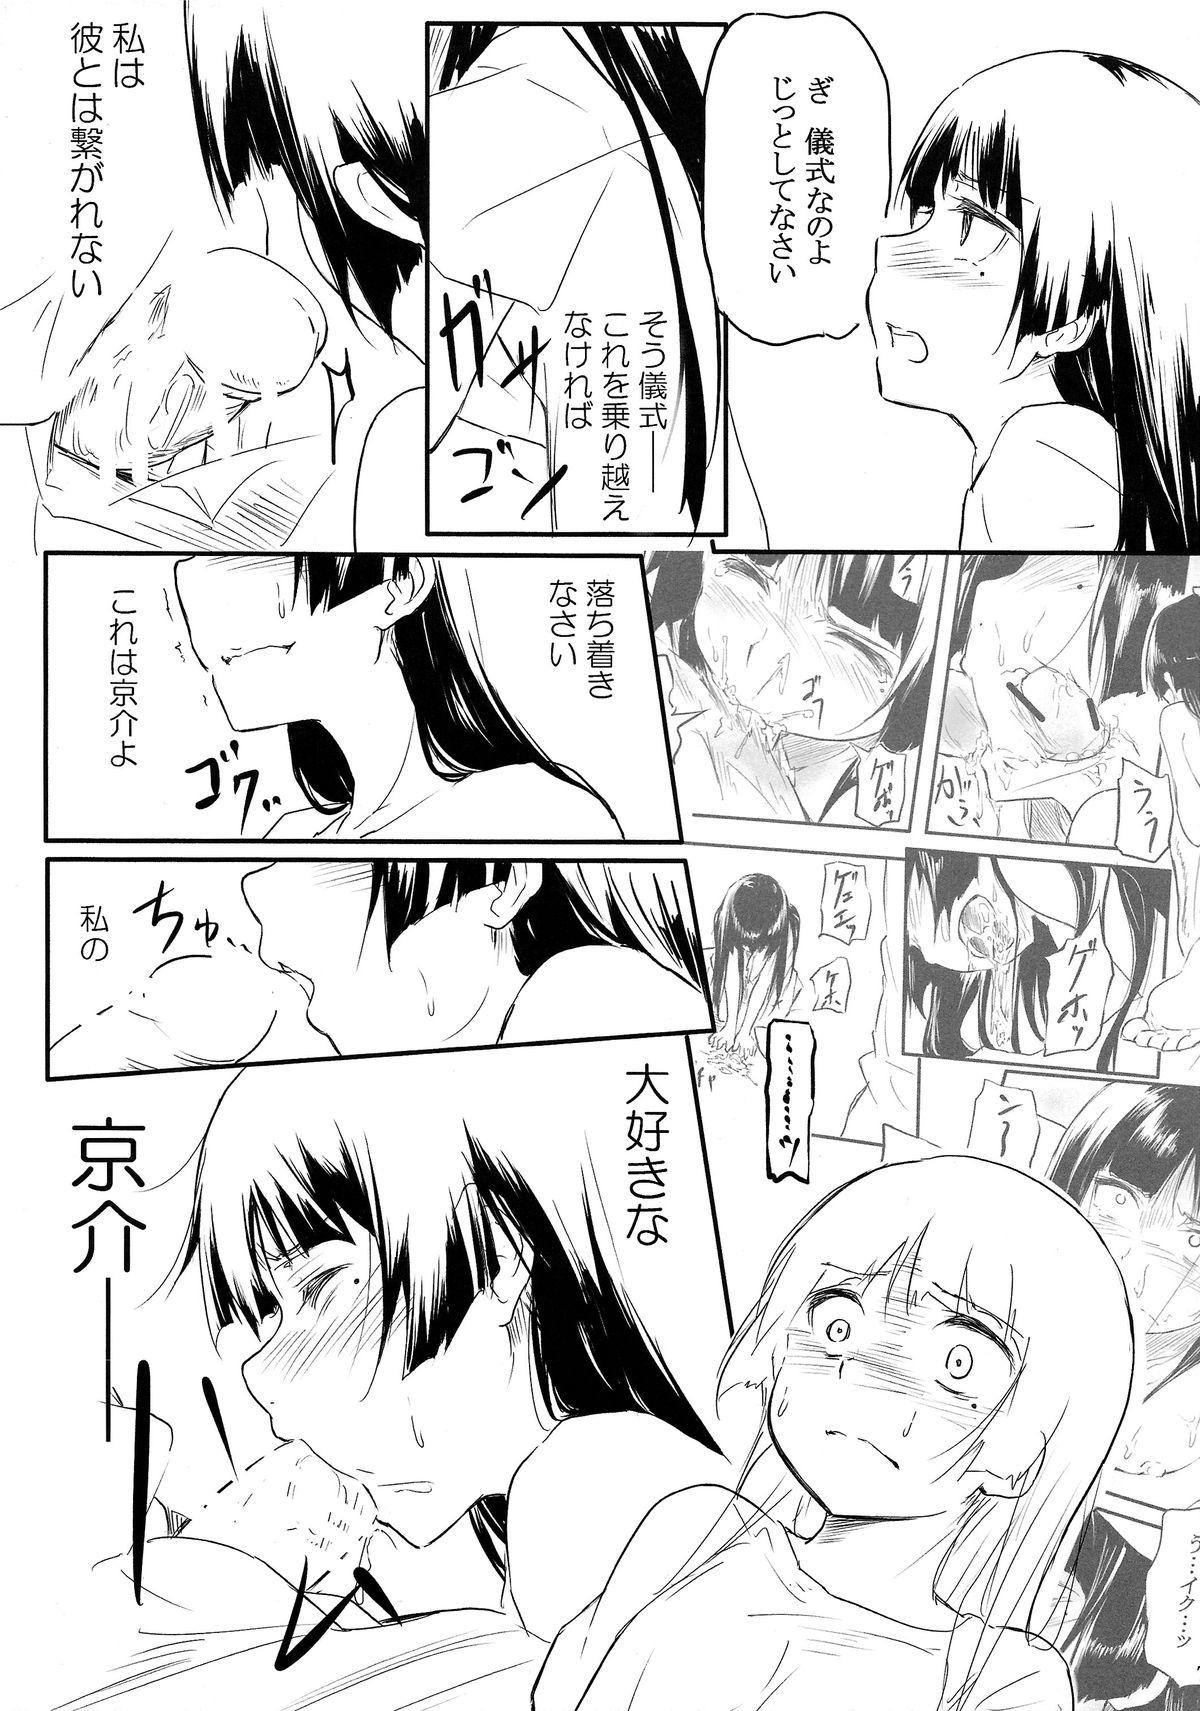 Sologirl Neko ni Karukan 3 - Ore no imouto ga konna ni kawaii wake ga nai Soft - Page 9